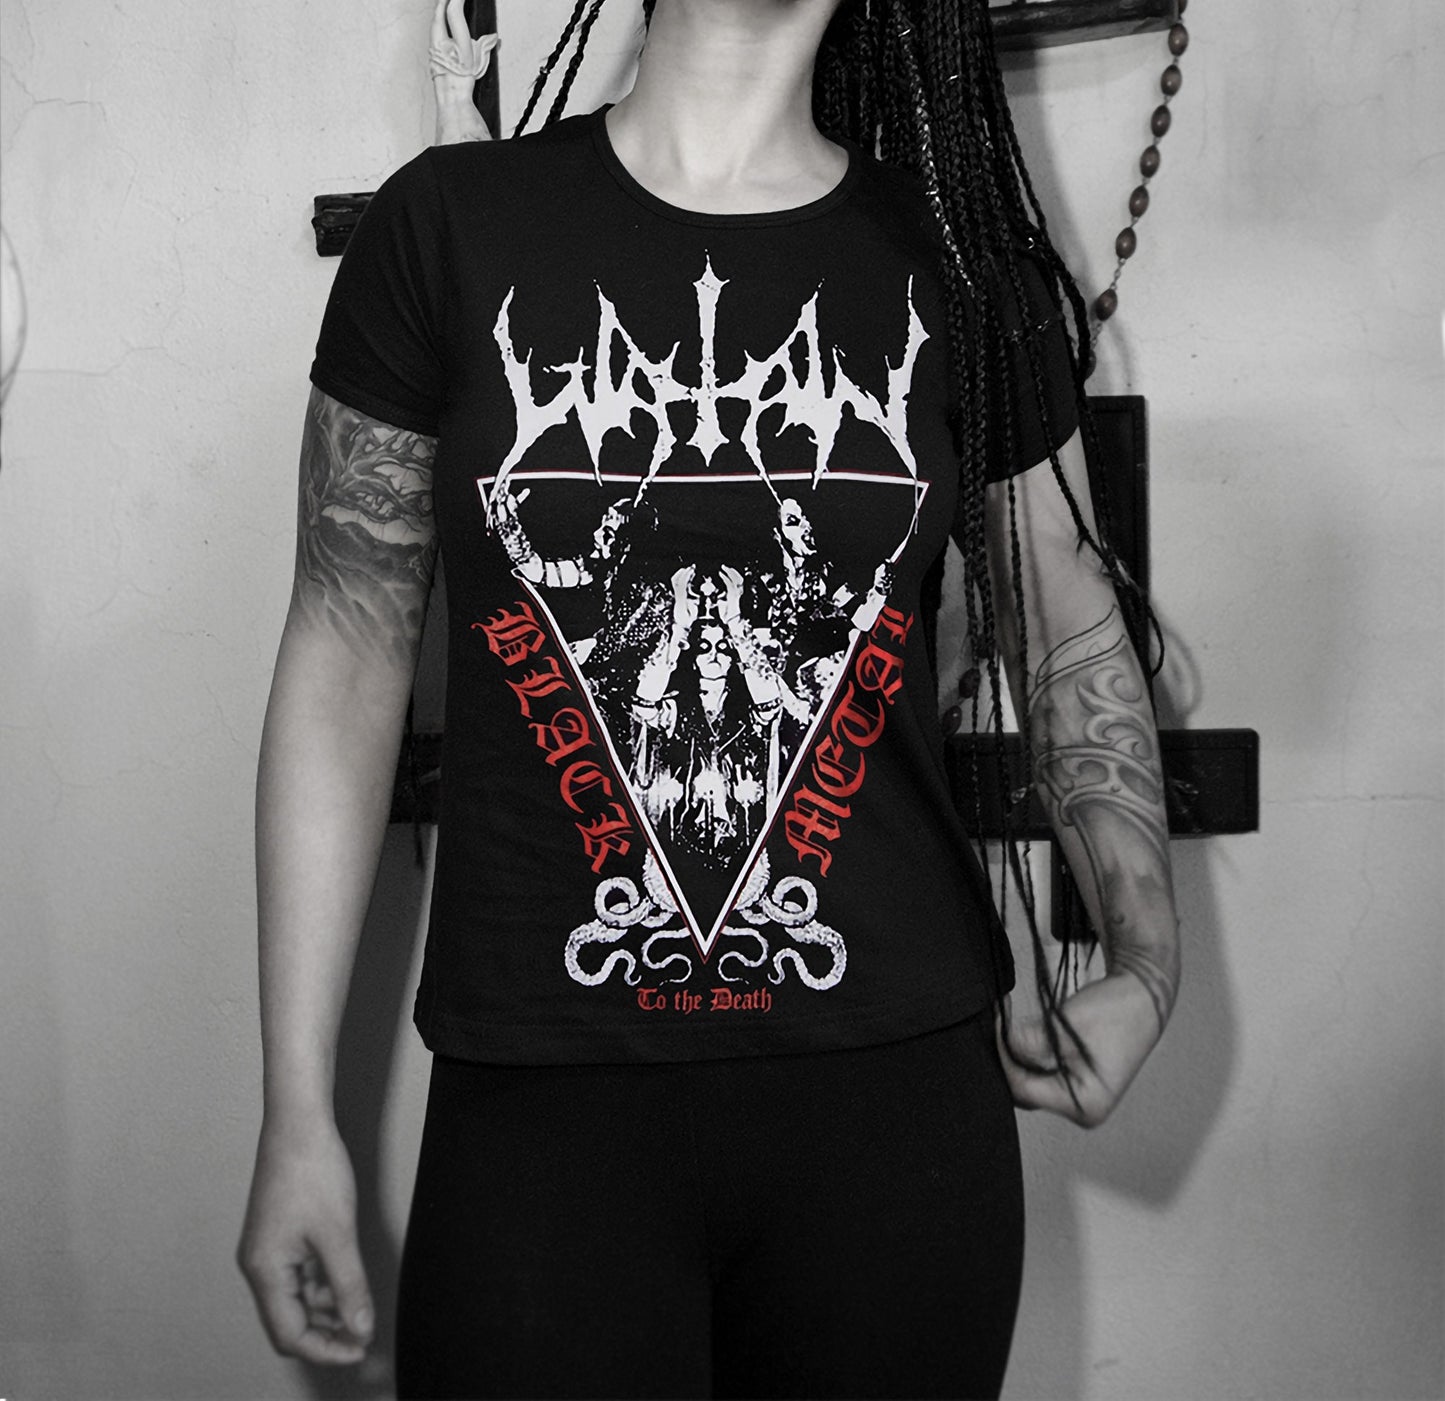 WATAIN black metal t shirt ⇹ black metal to the death ⇹ black metal tshirt